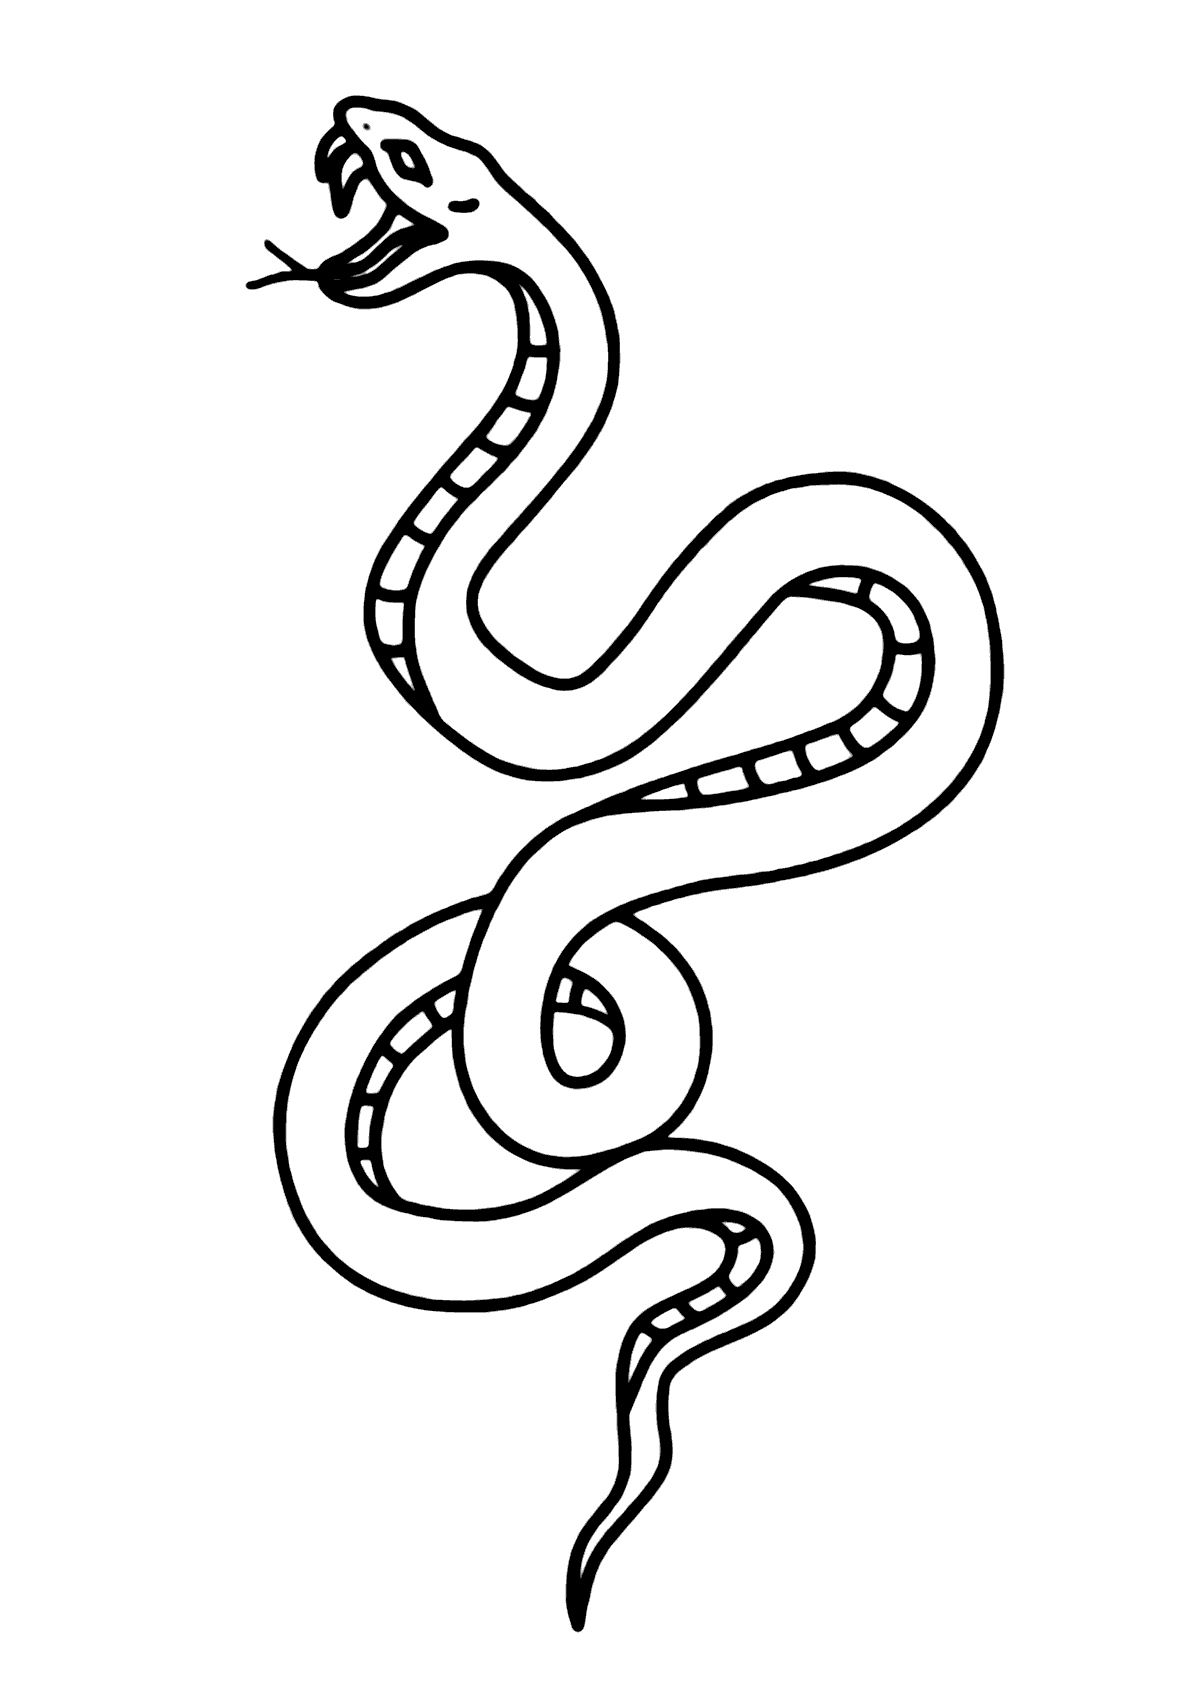 Desenho Para Colorir cobra - Imagens Grátis Para Imprimir - img 18149